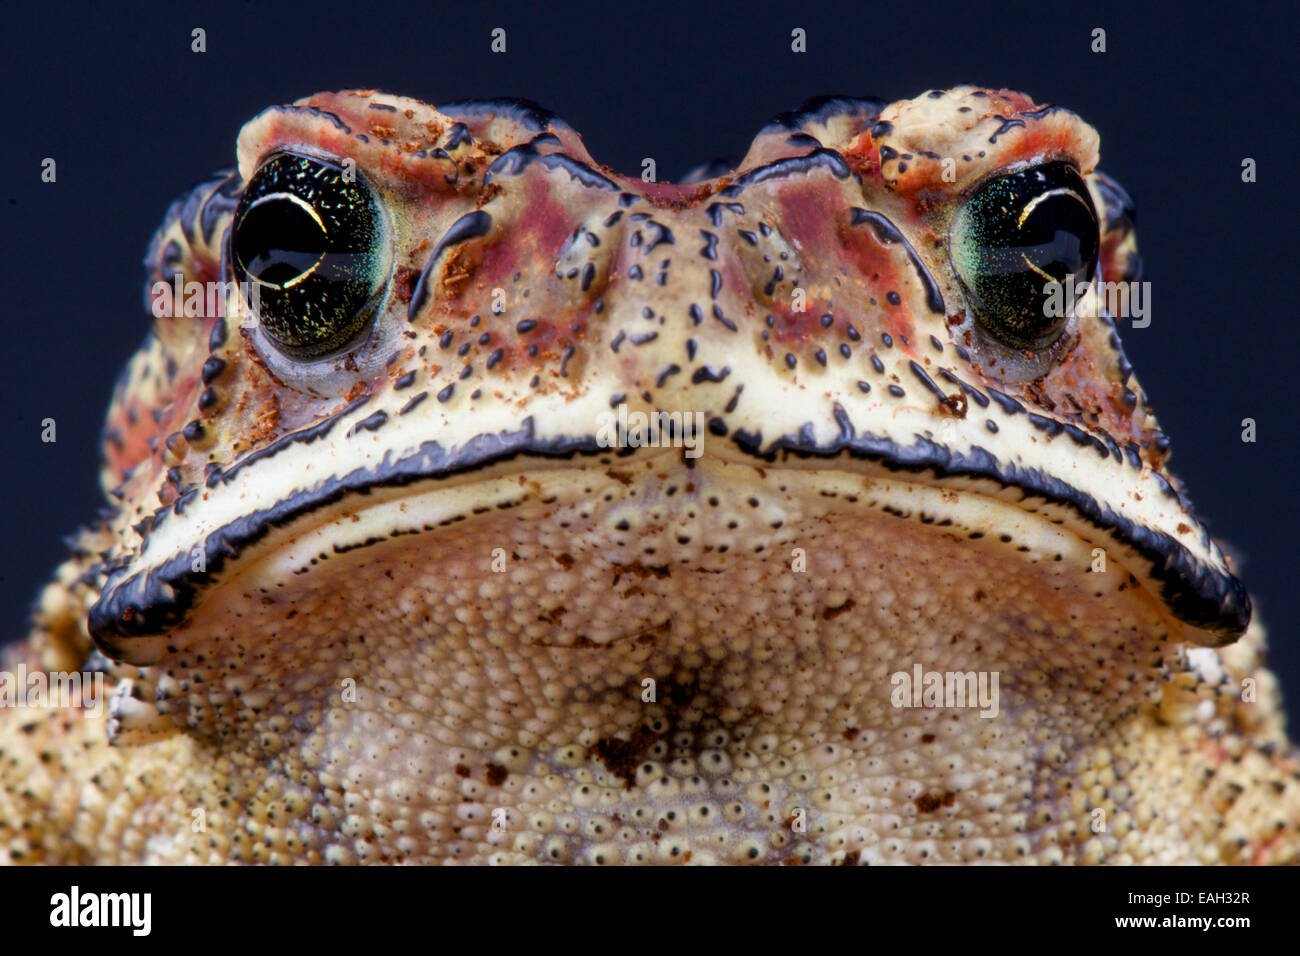 Asian toad (Duttaphrynus melanosticus) Stock Photo